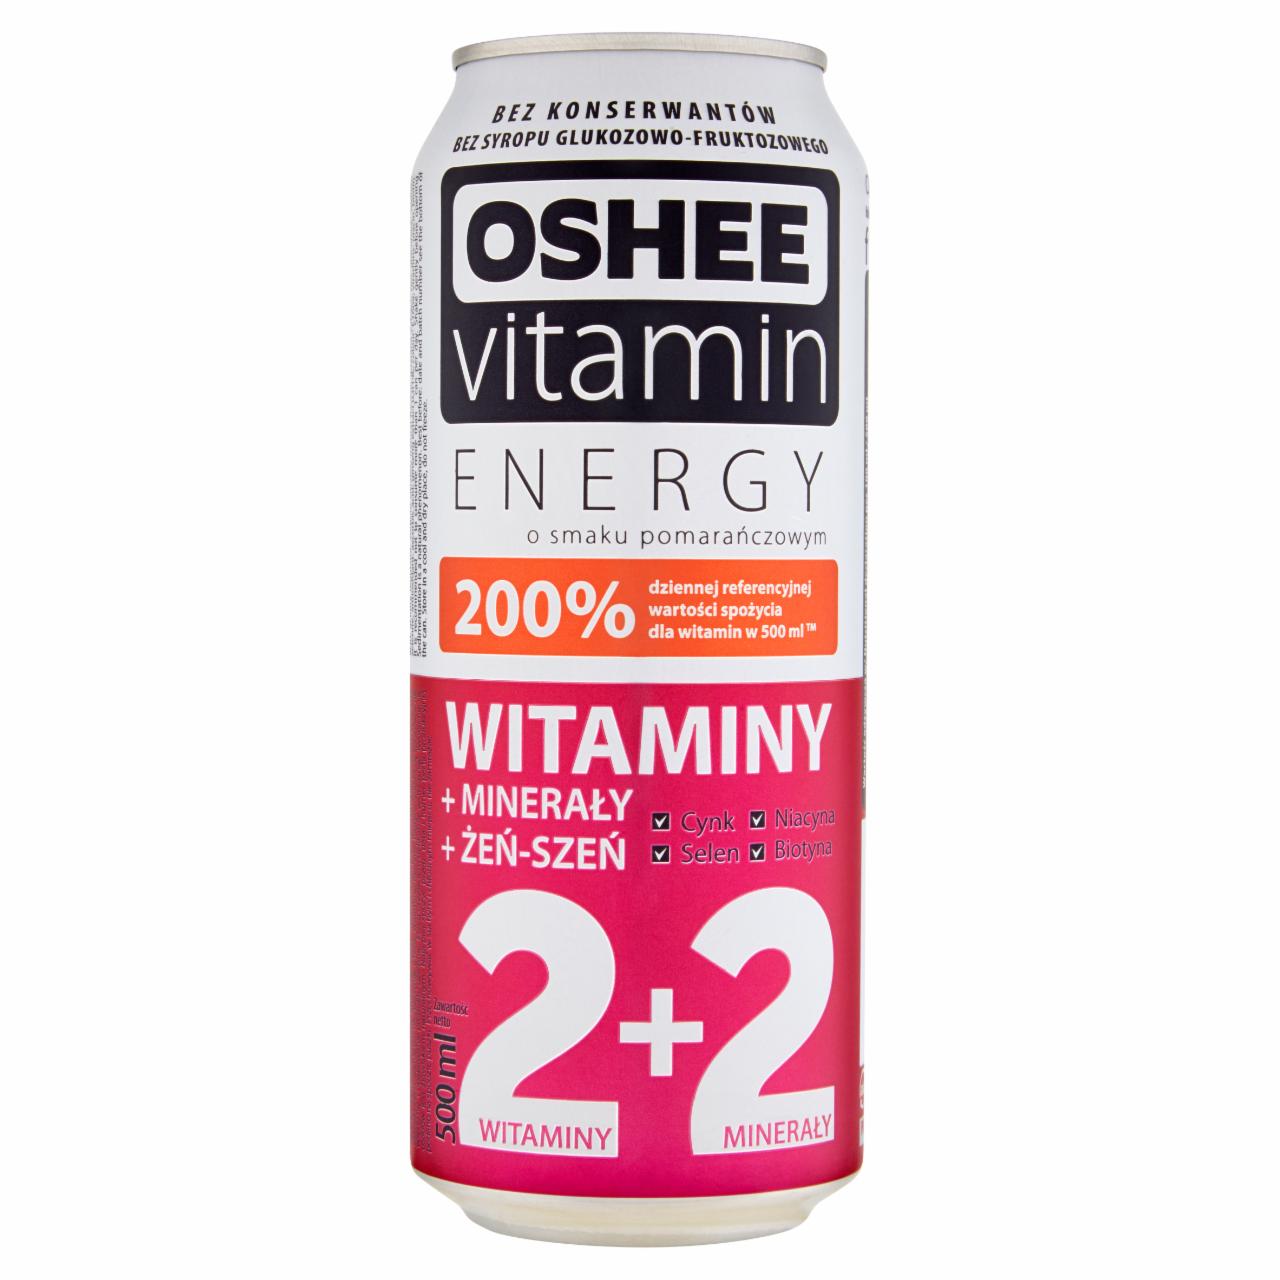 Zdjęcia - Oshee Vitamin Energy Witaminy Napój gazowany o smaku pomarańczowym 500 ml